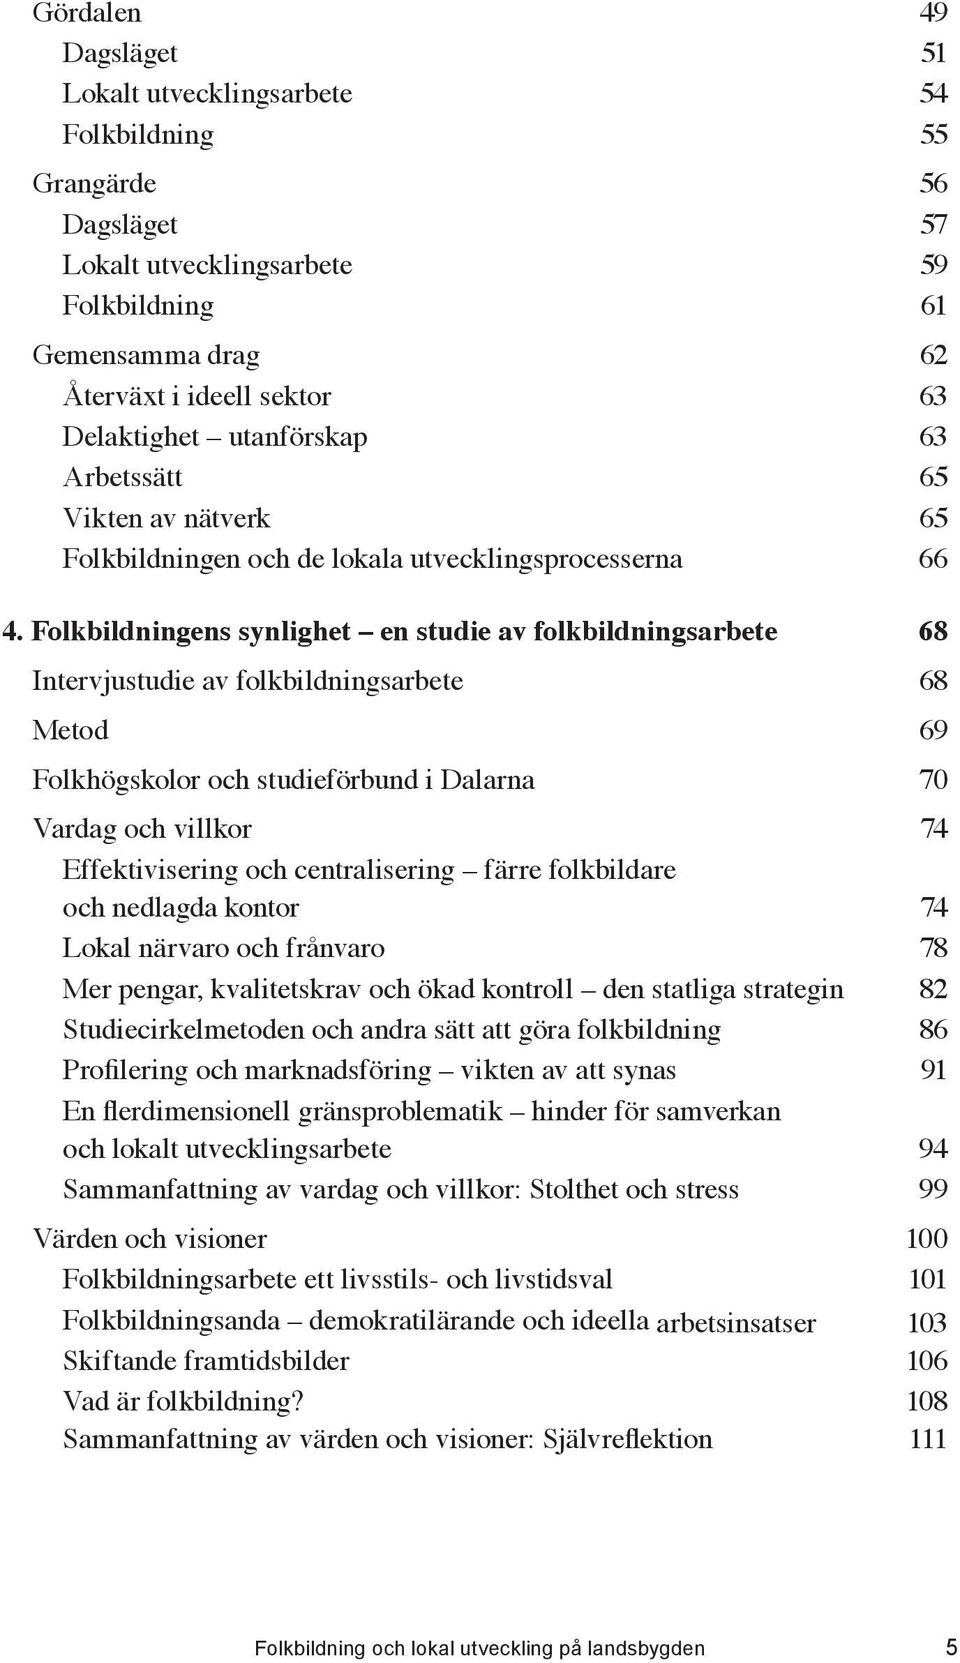 ..68 Intervjustudie av folkbildningsarbete...68 Metod...69 Folkhögskolor och studieförbund i Dalarna...70 Vardag och villkor.